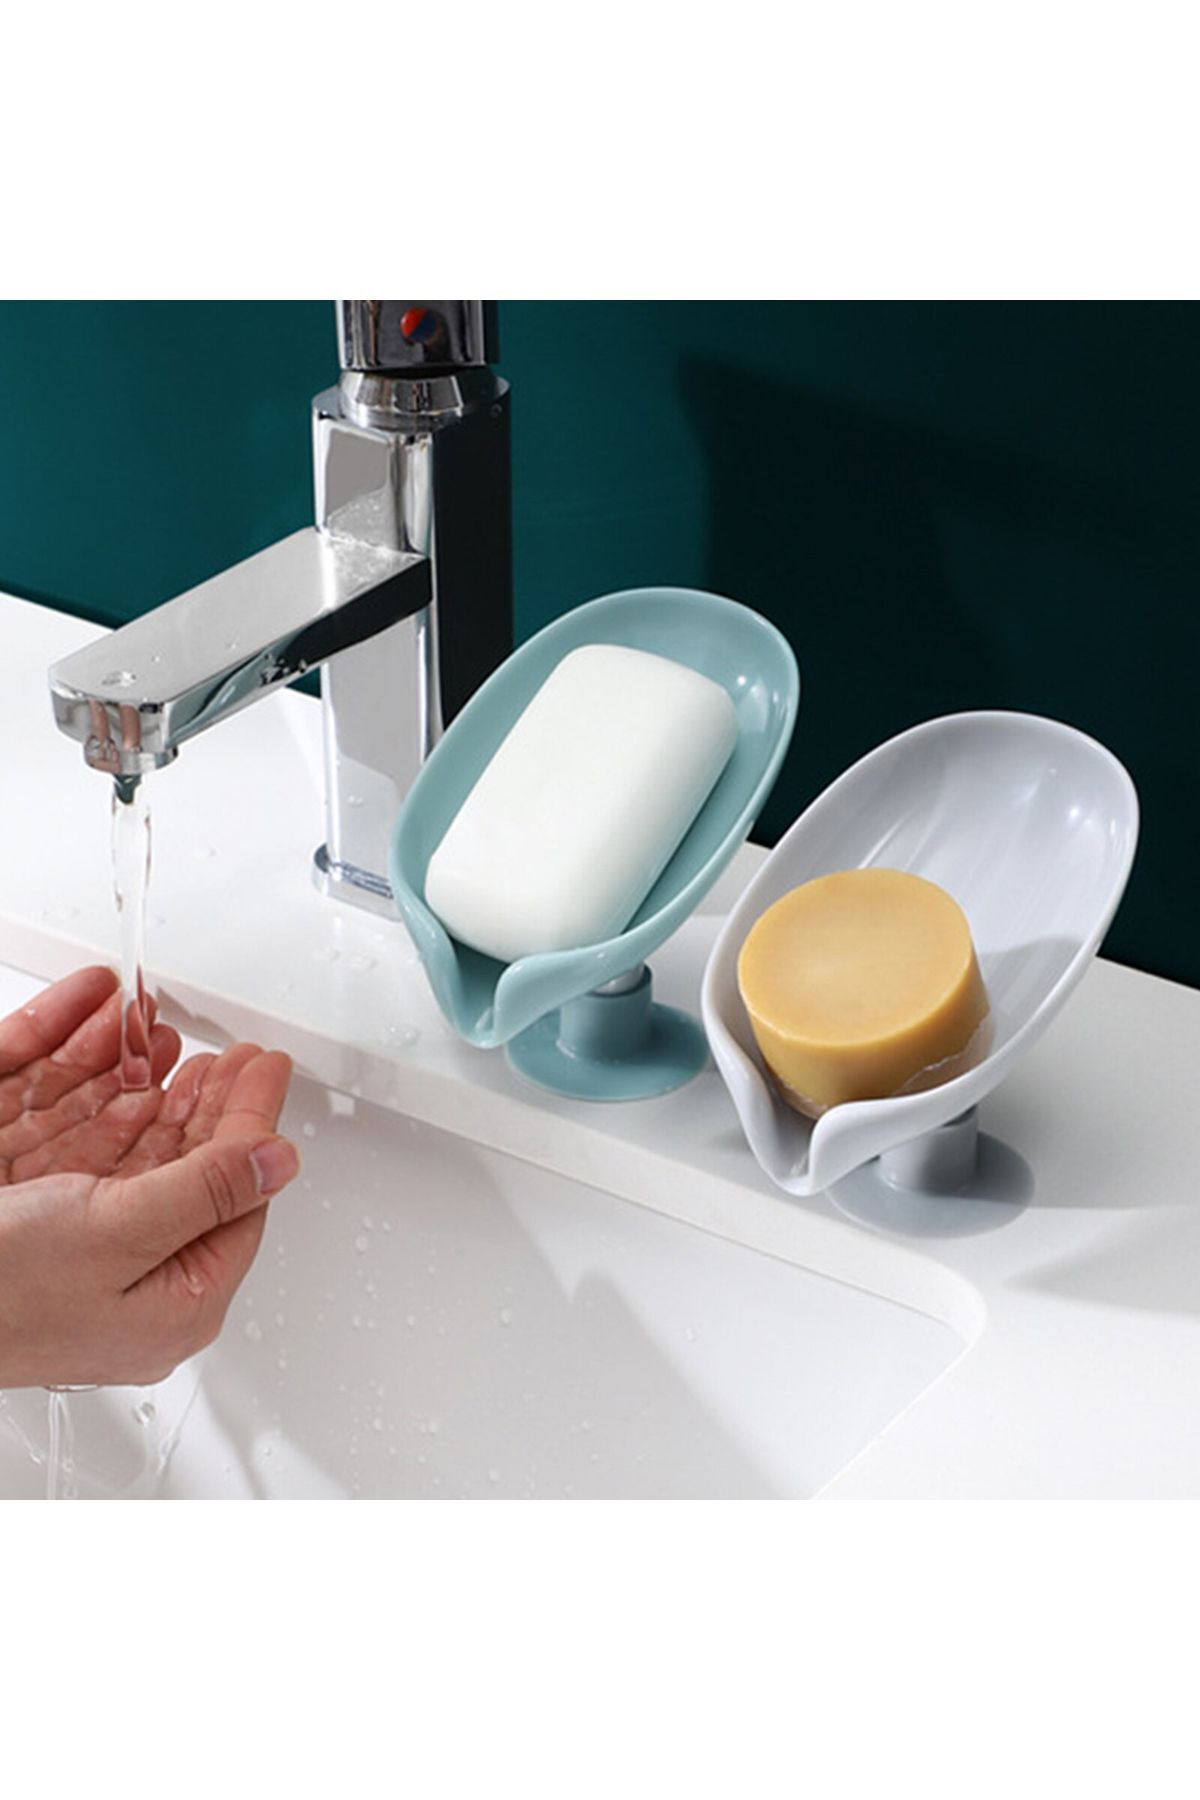 omilife Vantuzlu Su Giderli Sabunluk Şık Tasarımlı Su Tutmaz Katı Sabunluk 2 Adet